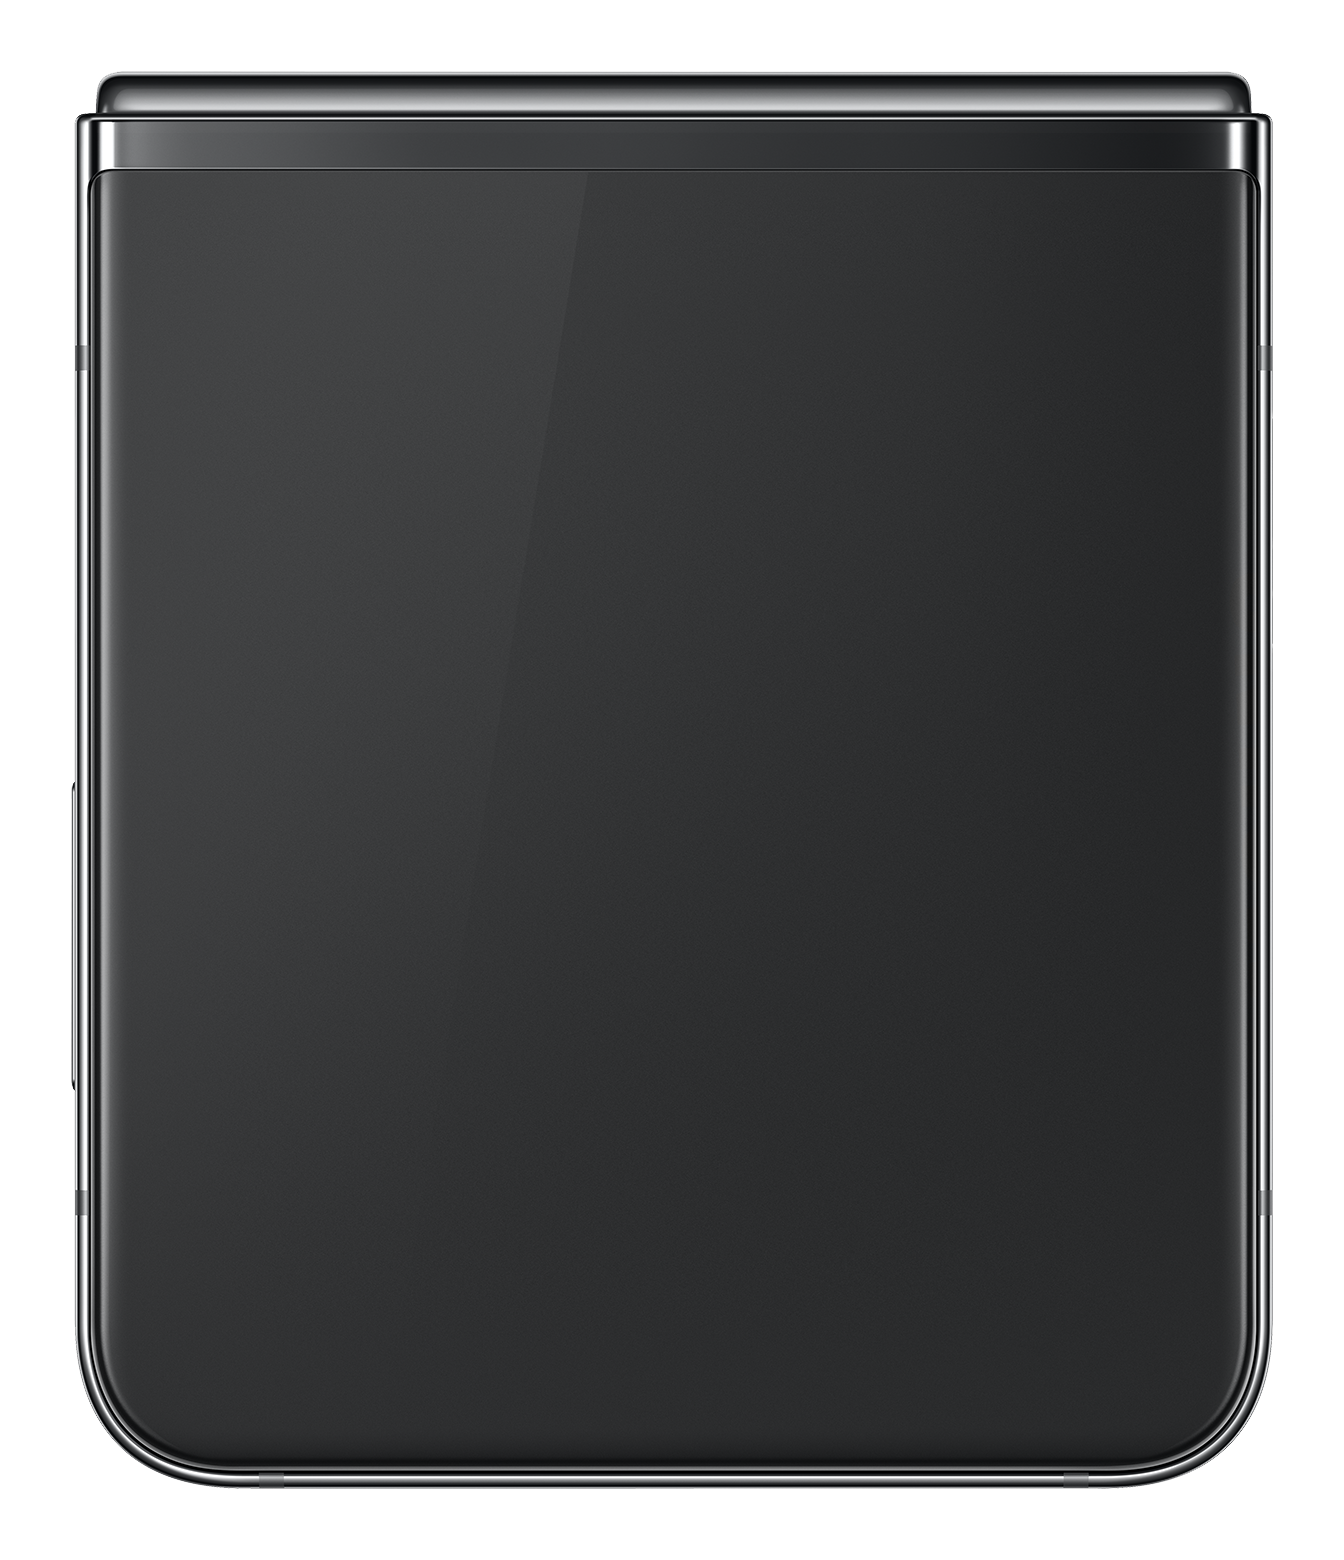 Samsung Flip5 5G black back